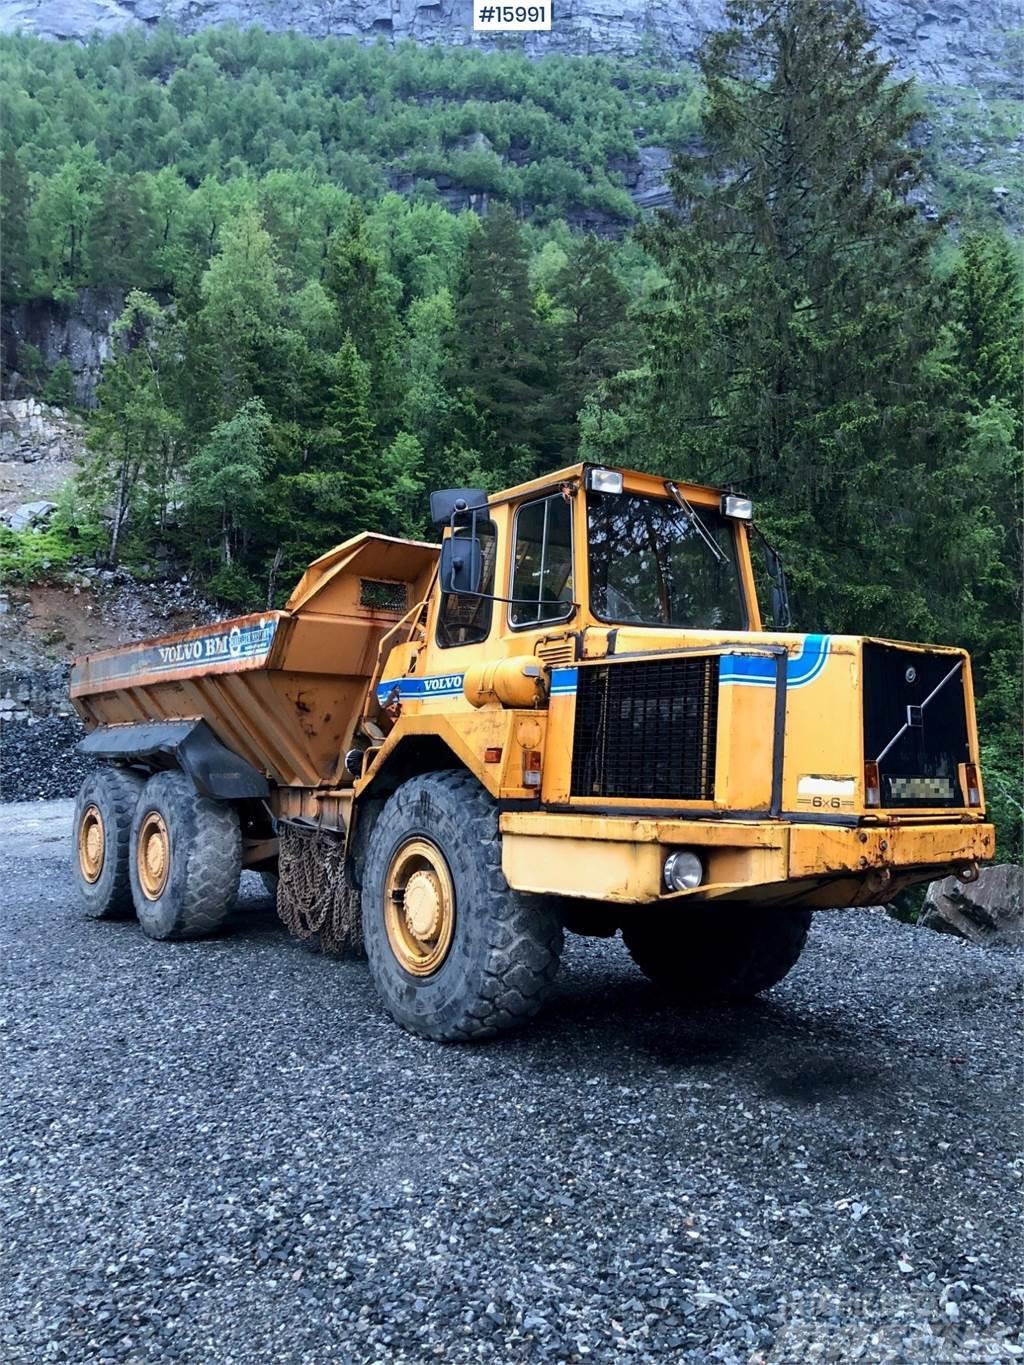 Volvo 5350B 6x6 Dump truck Belden kirma kaya kamyonu